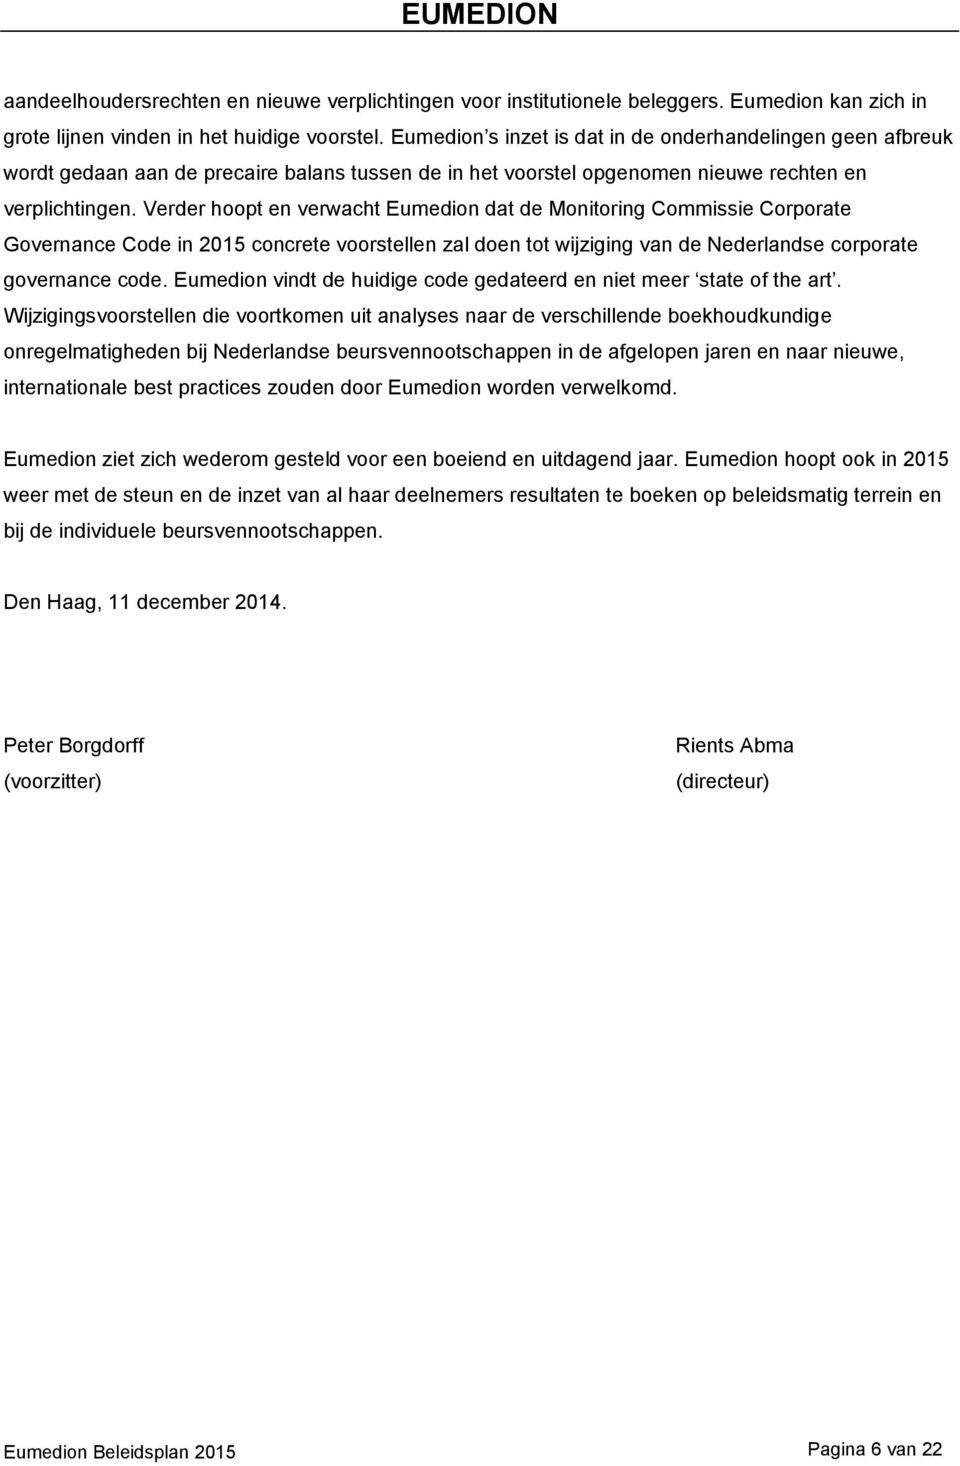 Verder hoopt en verwacht Eumedion dat de Monitoring Commissie Corporate Governance Code in 2015 concrete voorstellen zal doen tot wijziging van de Nederlandse corporate governance code.